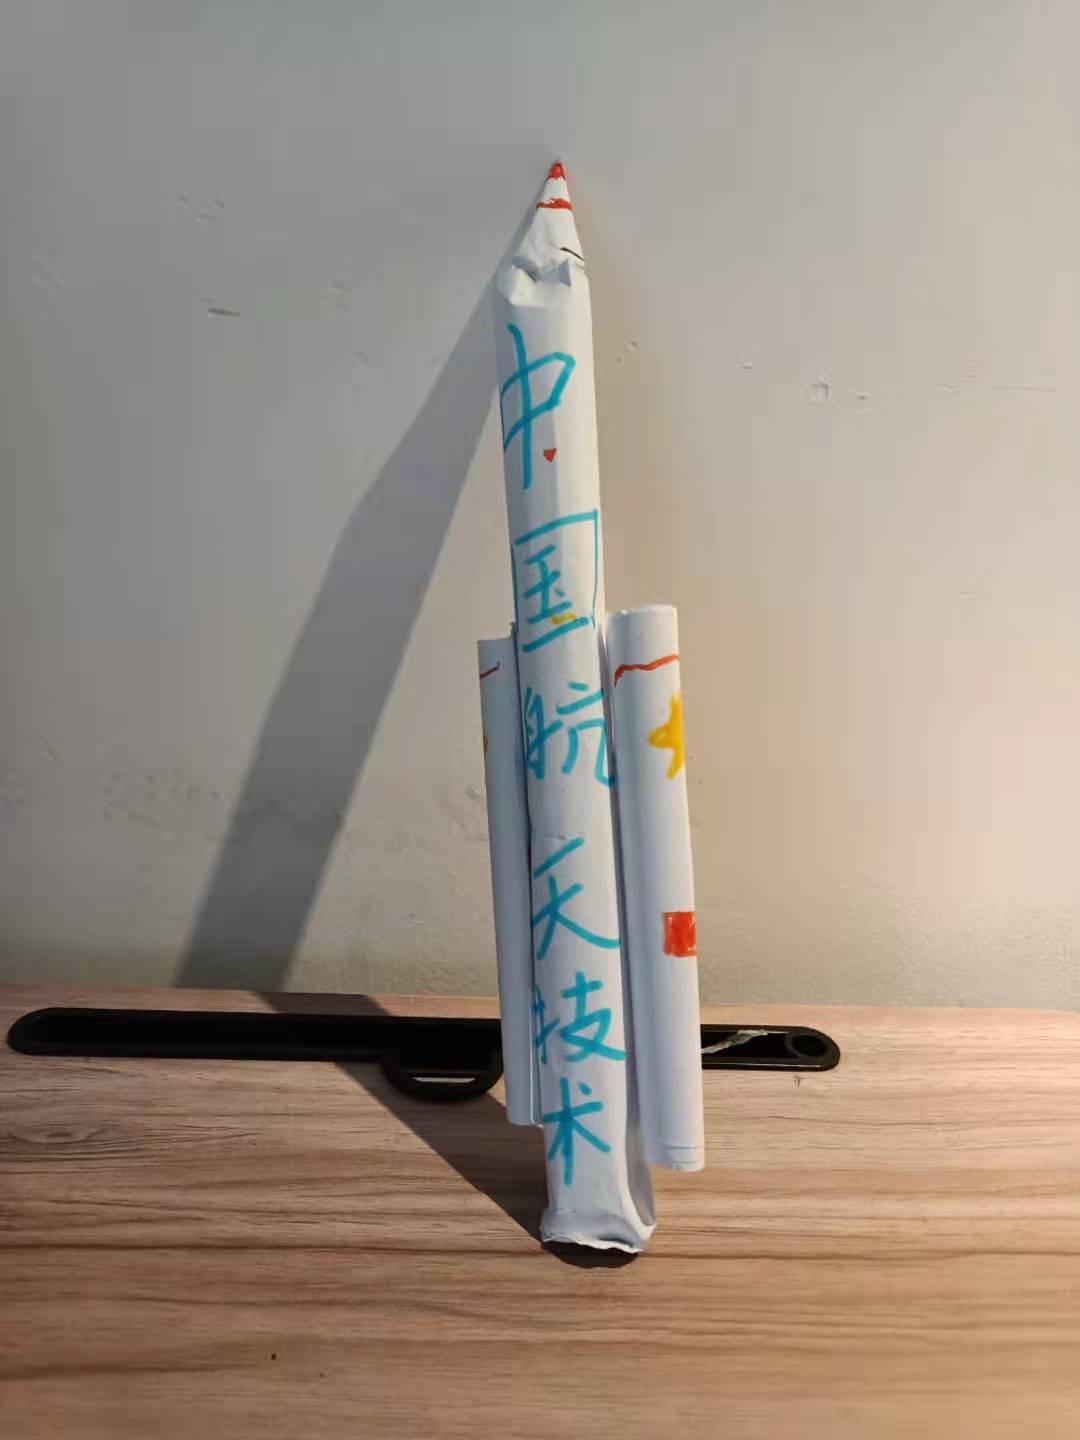 制作一个火箭祝贺中国空间站航天员首次出舱！